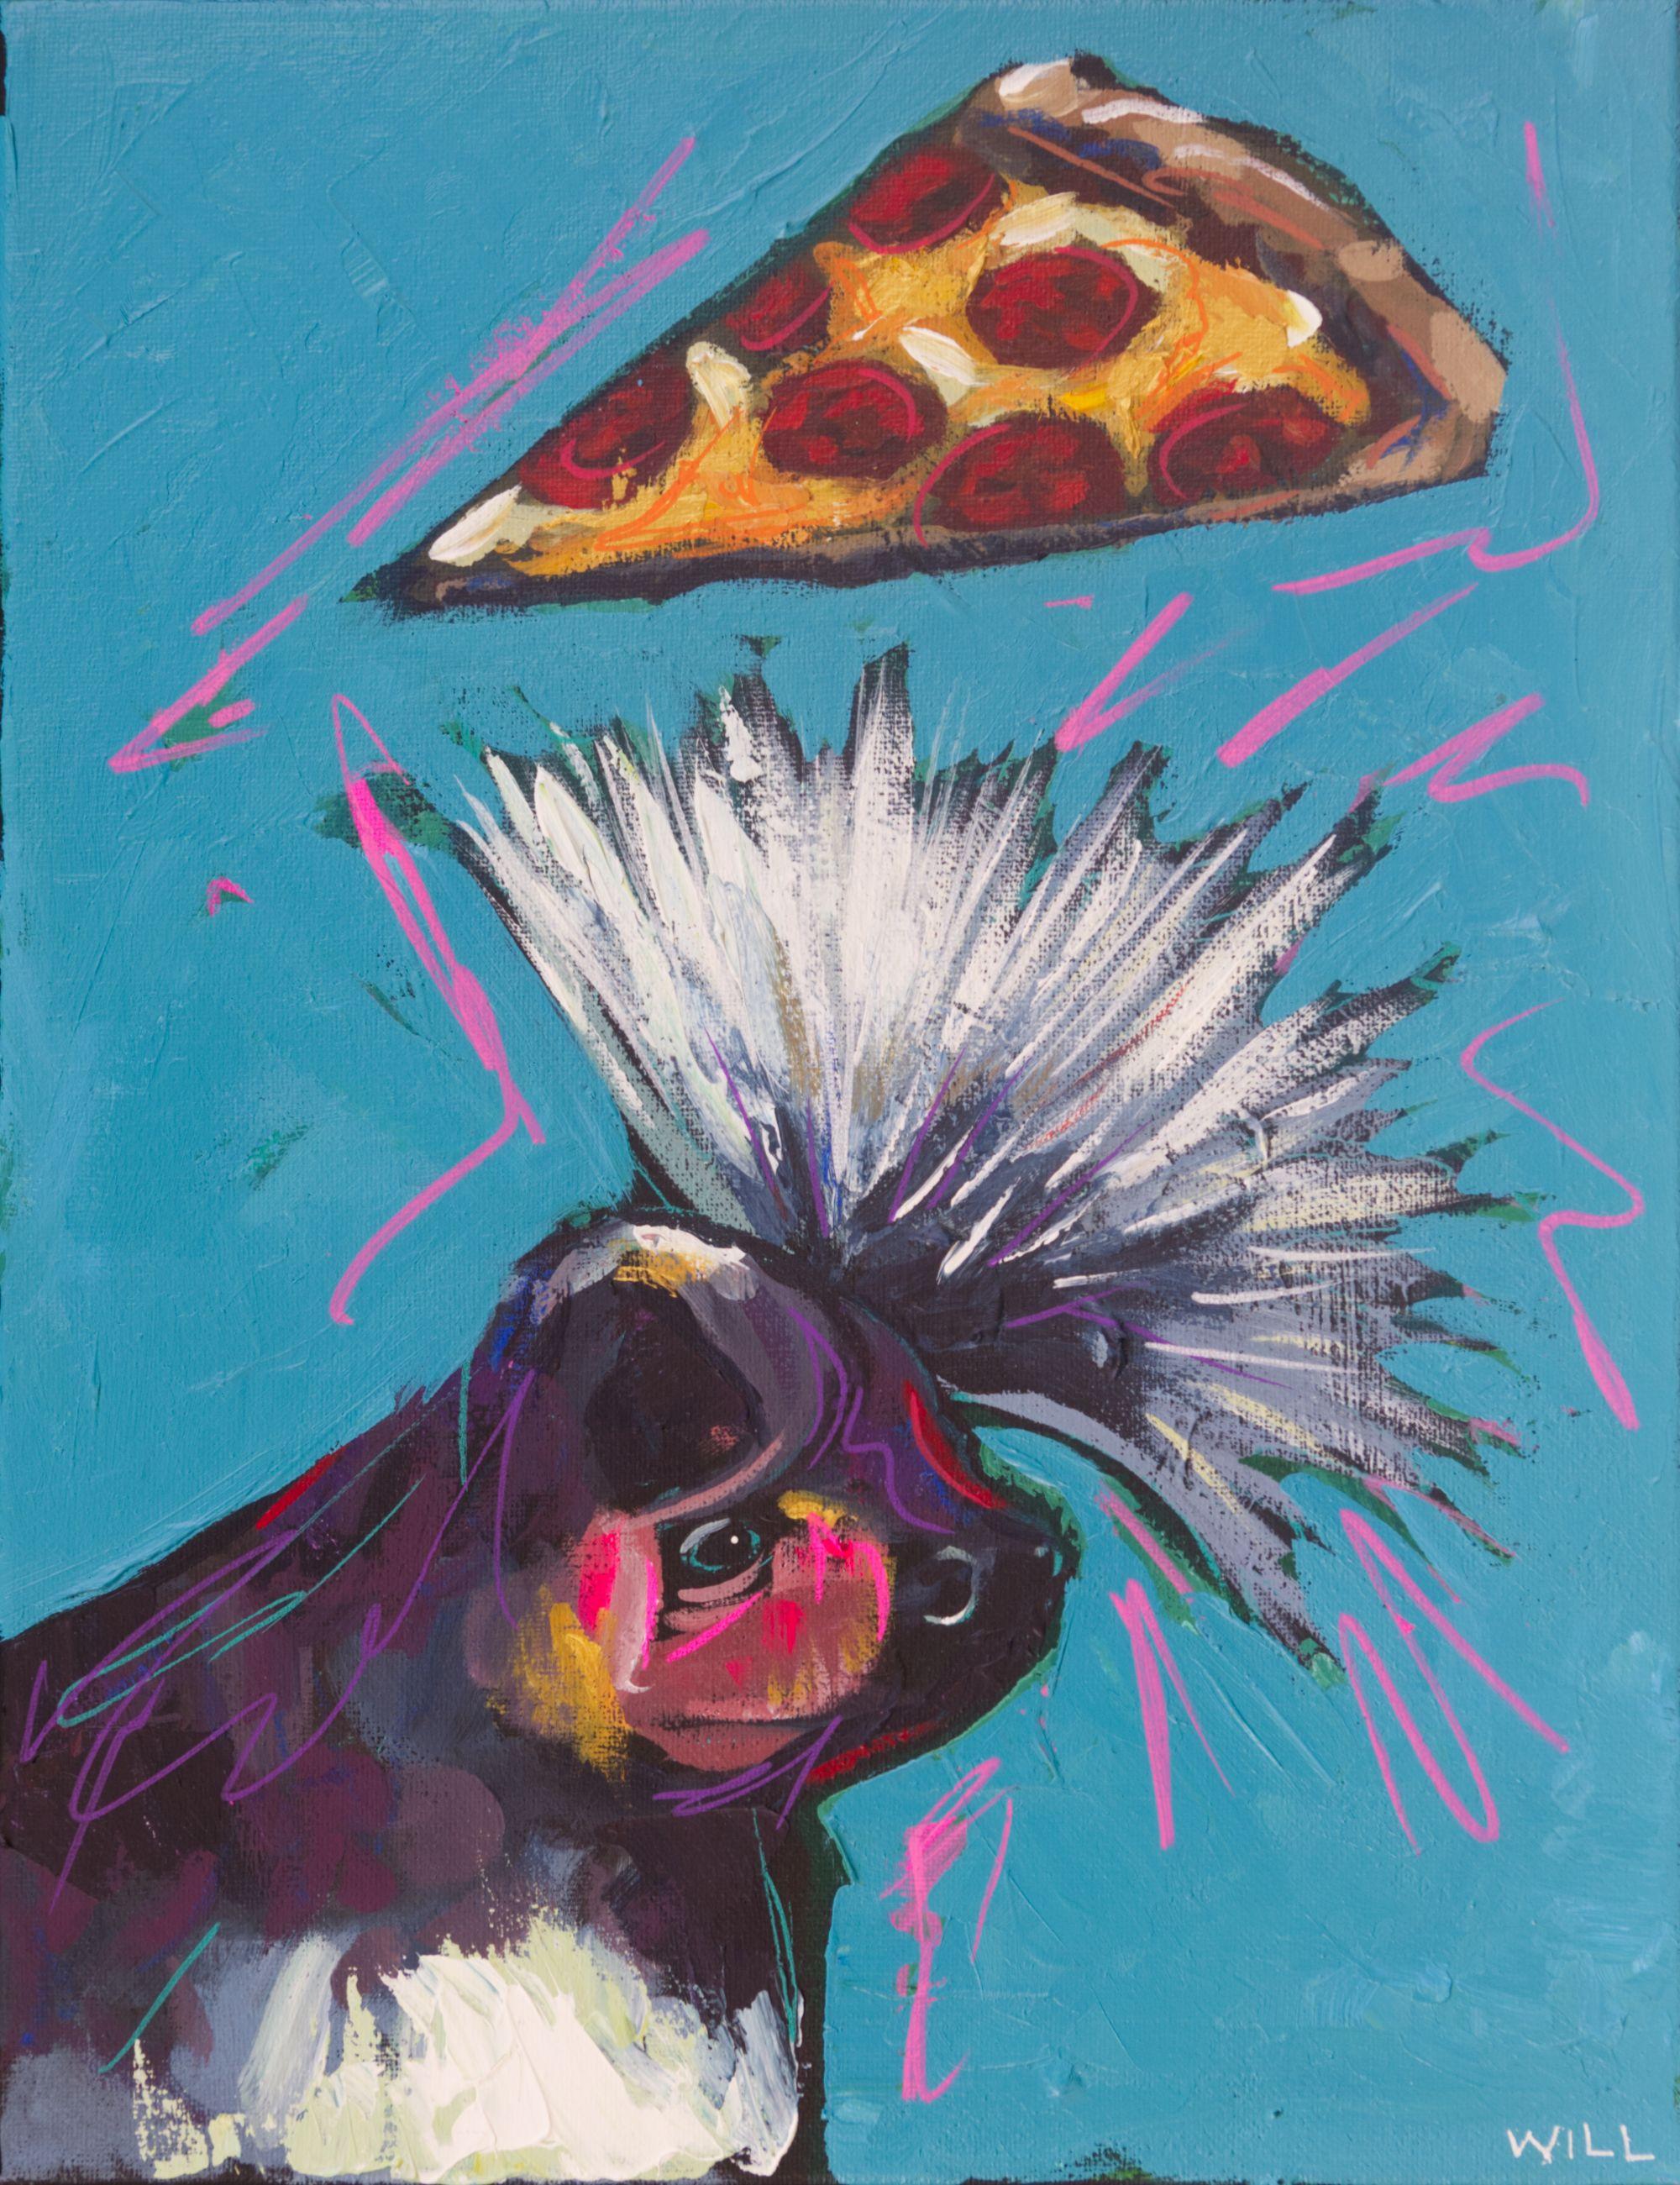 Sheena Is A Pizza Rocker (Sheena est une rockeuse de pizza), peinture sur toile acrylique - Painting de Will Eskridge